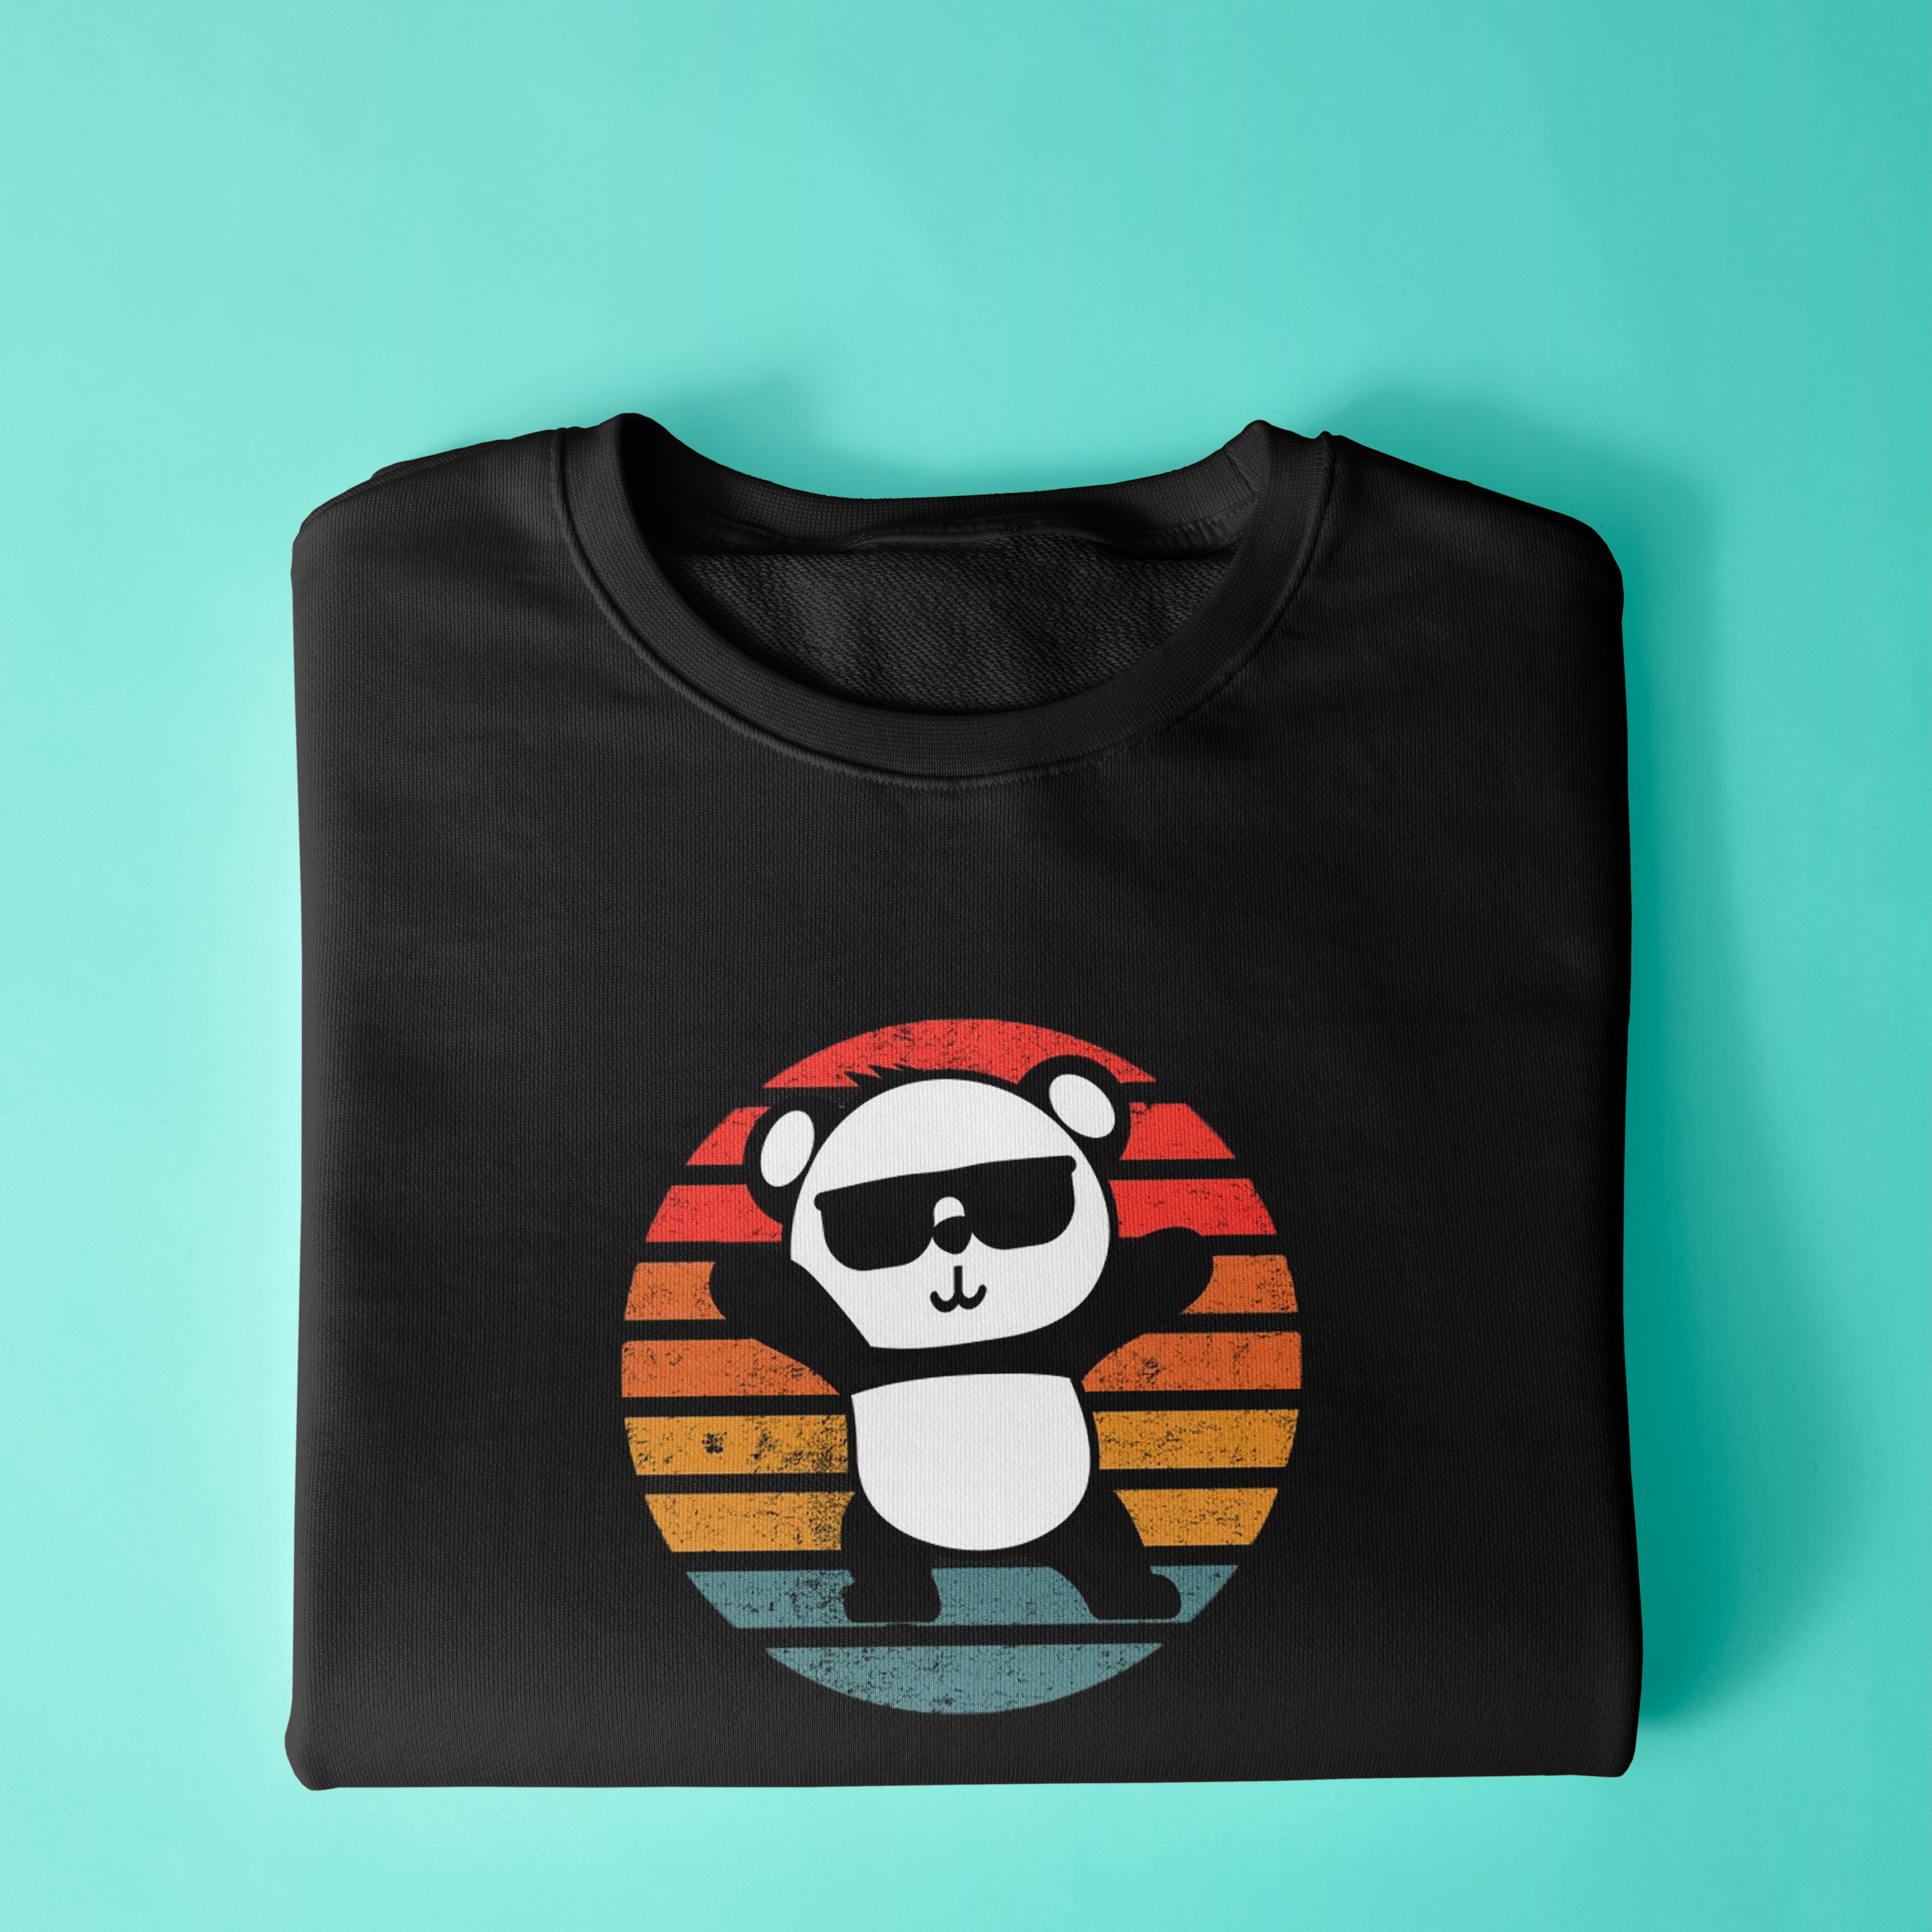 Cool Panda Sweatshirt